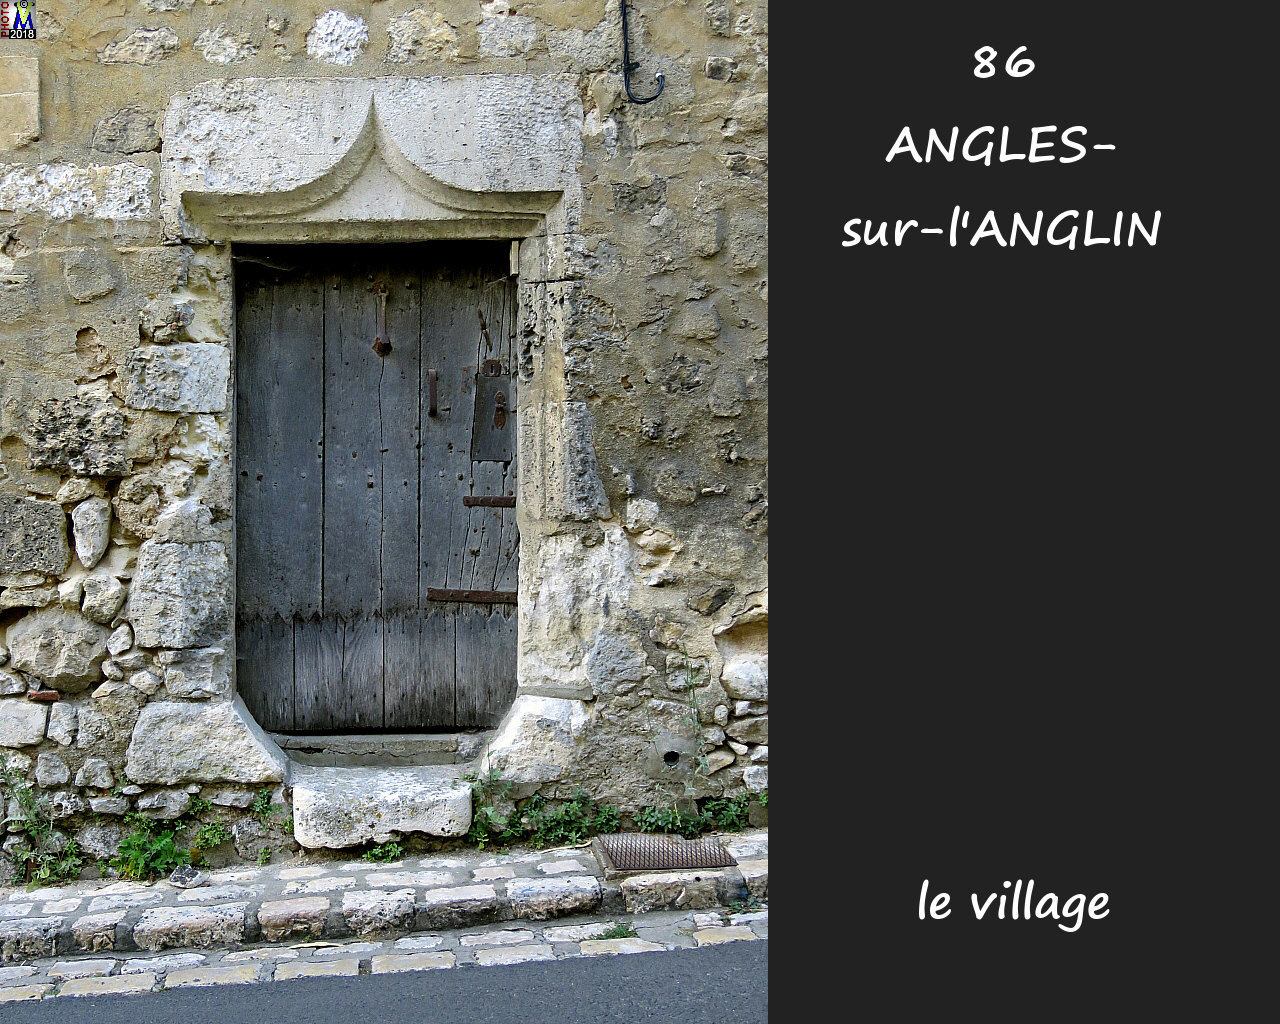 86ANGLES-S-ANGLIN_village_1048.jpg